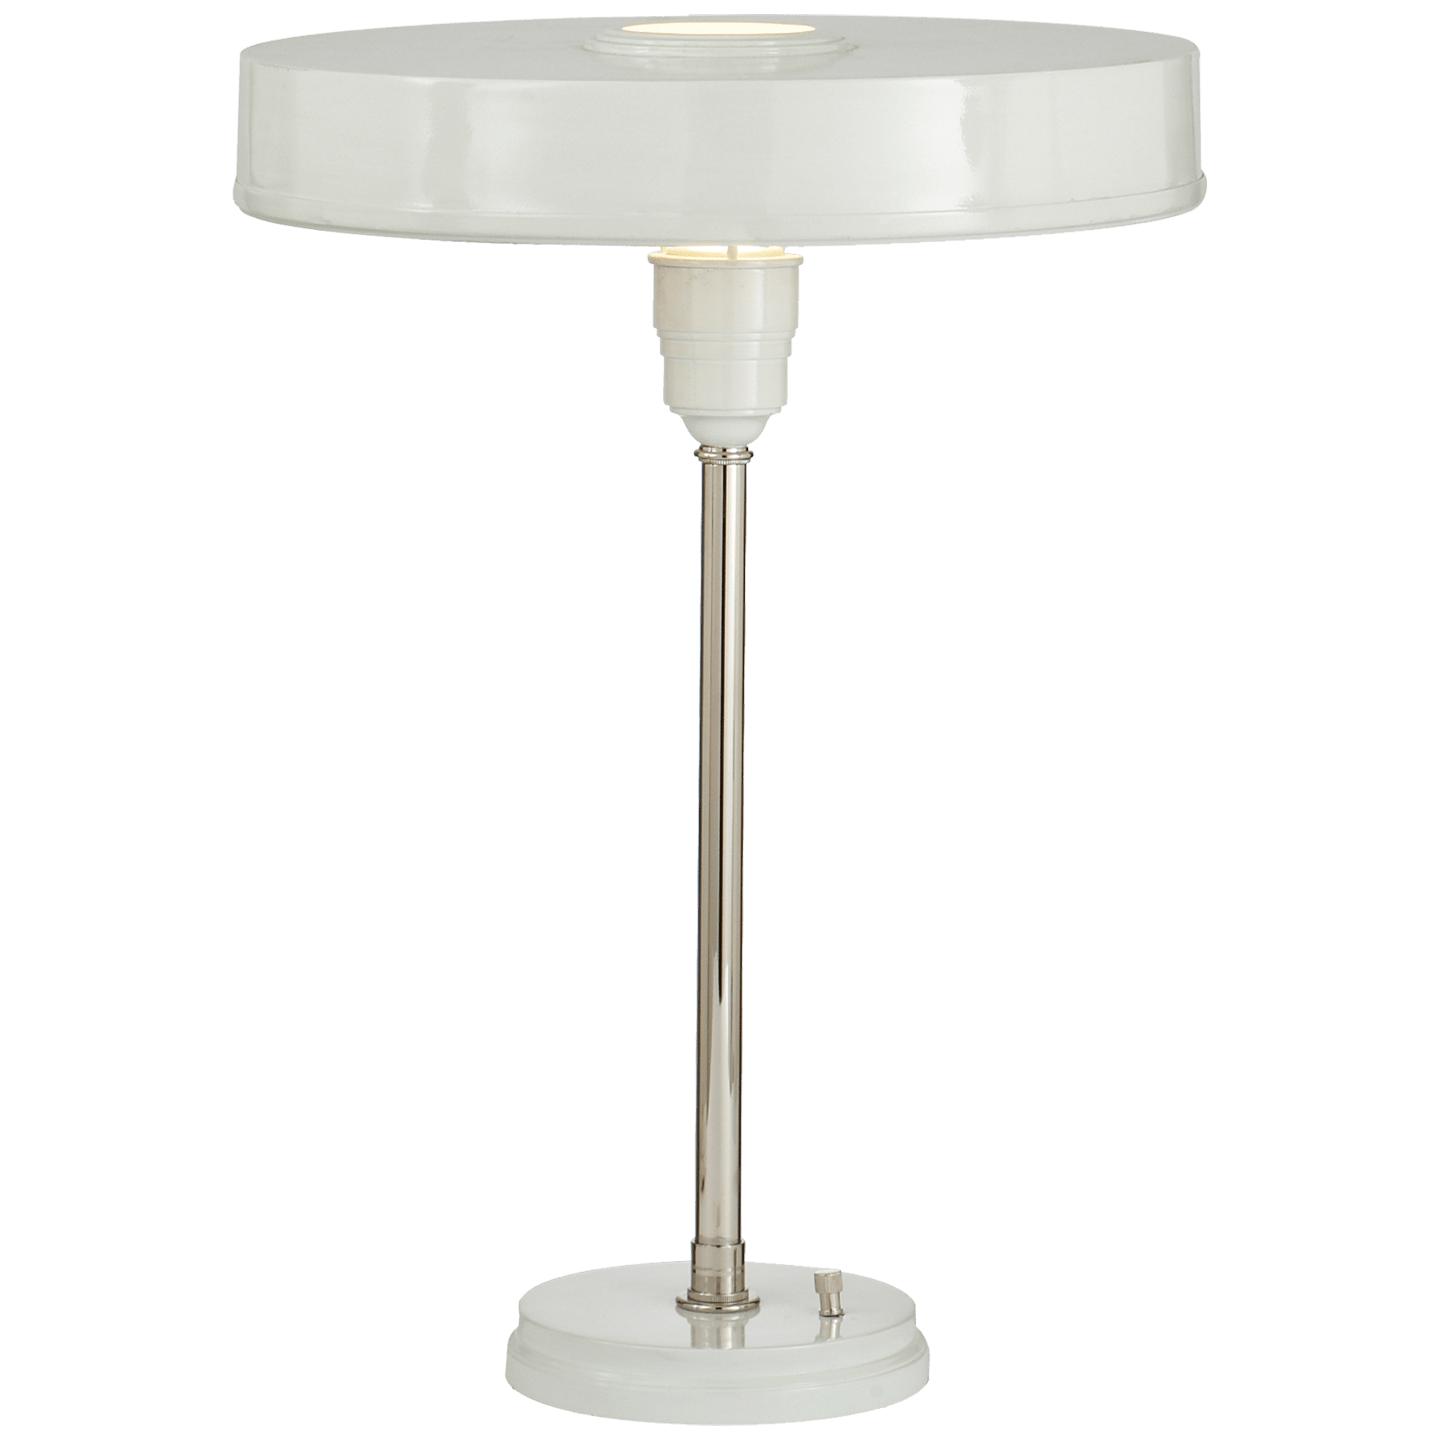 Купить Настольная лампа Carlo Table Lamp в интернет-магазине roooms.ru